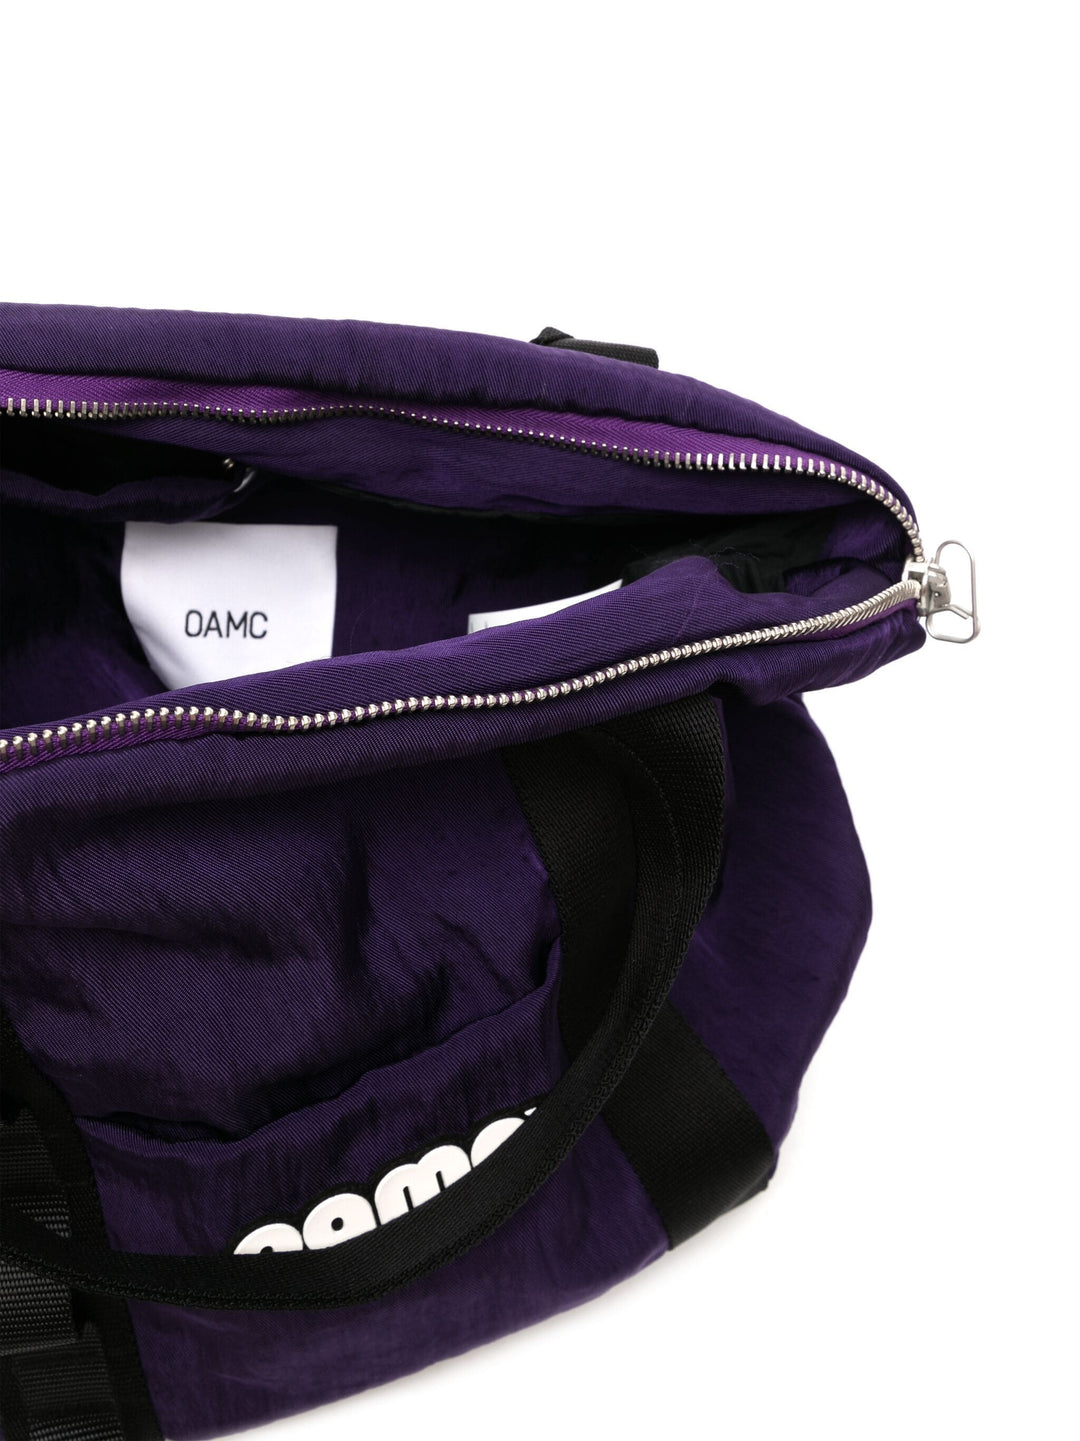 Oamc-Ascent-Bag-Purple-5